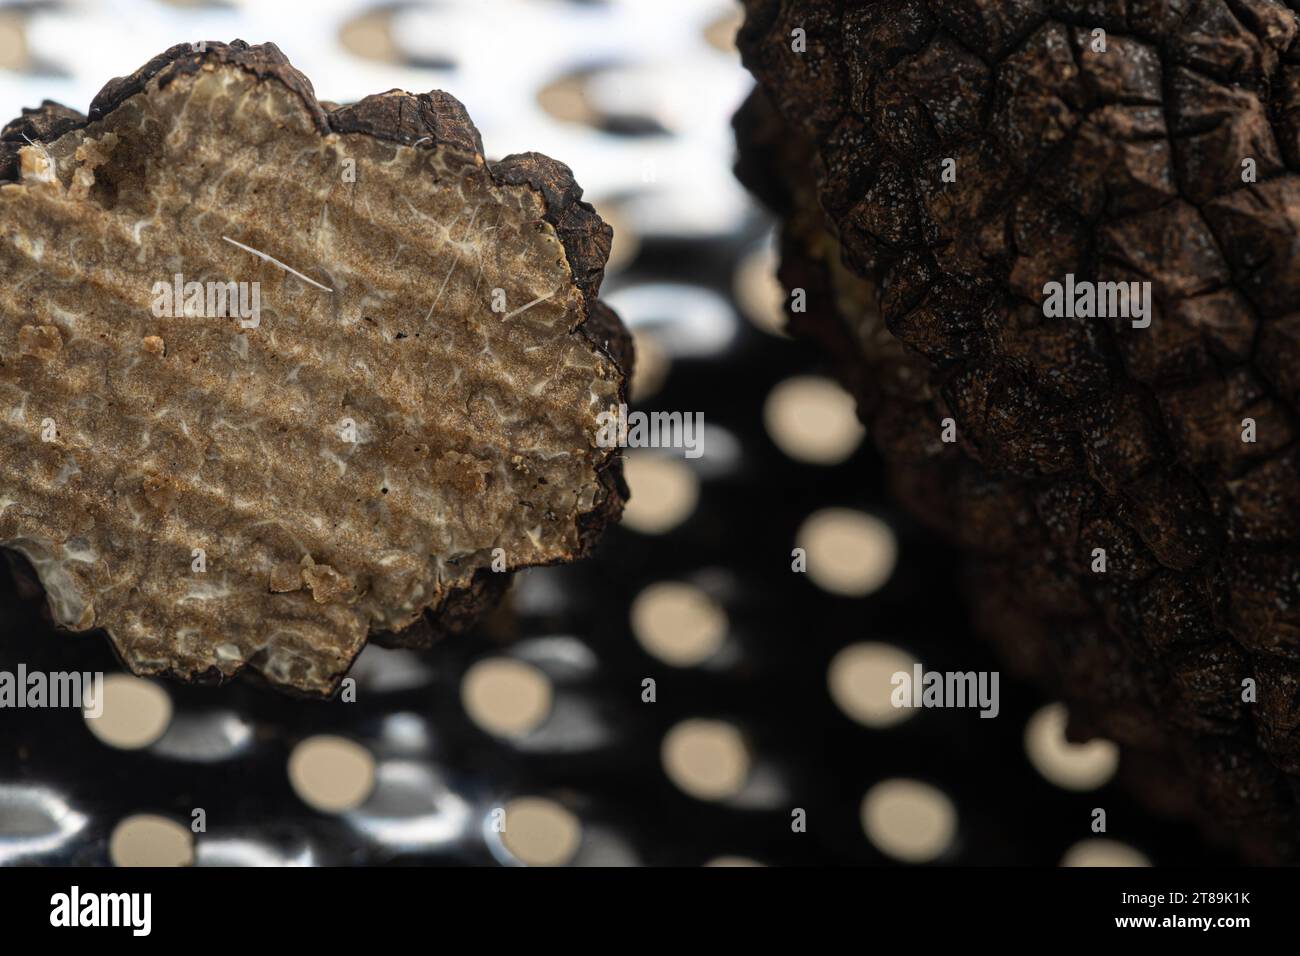 Symphonie culinaire exquise : truffes noires prêtes pour la transformation à côté d'une râpe Banque D'Images